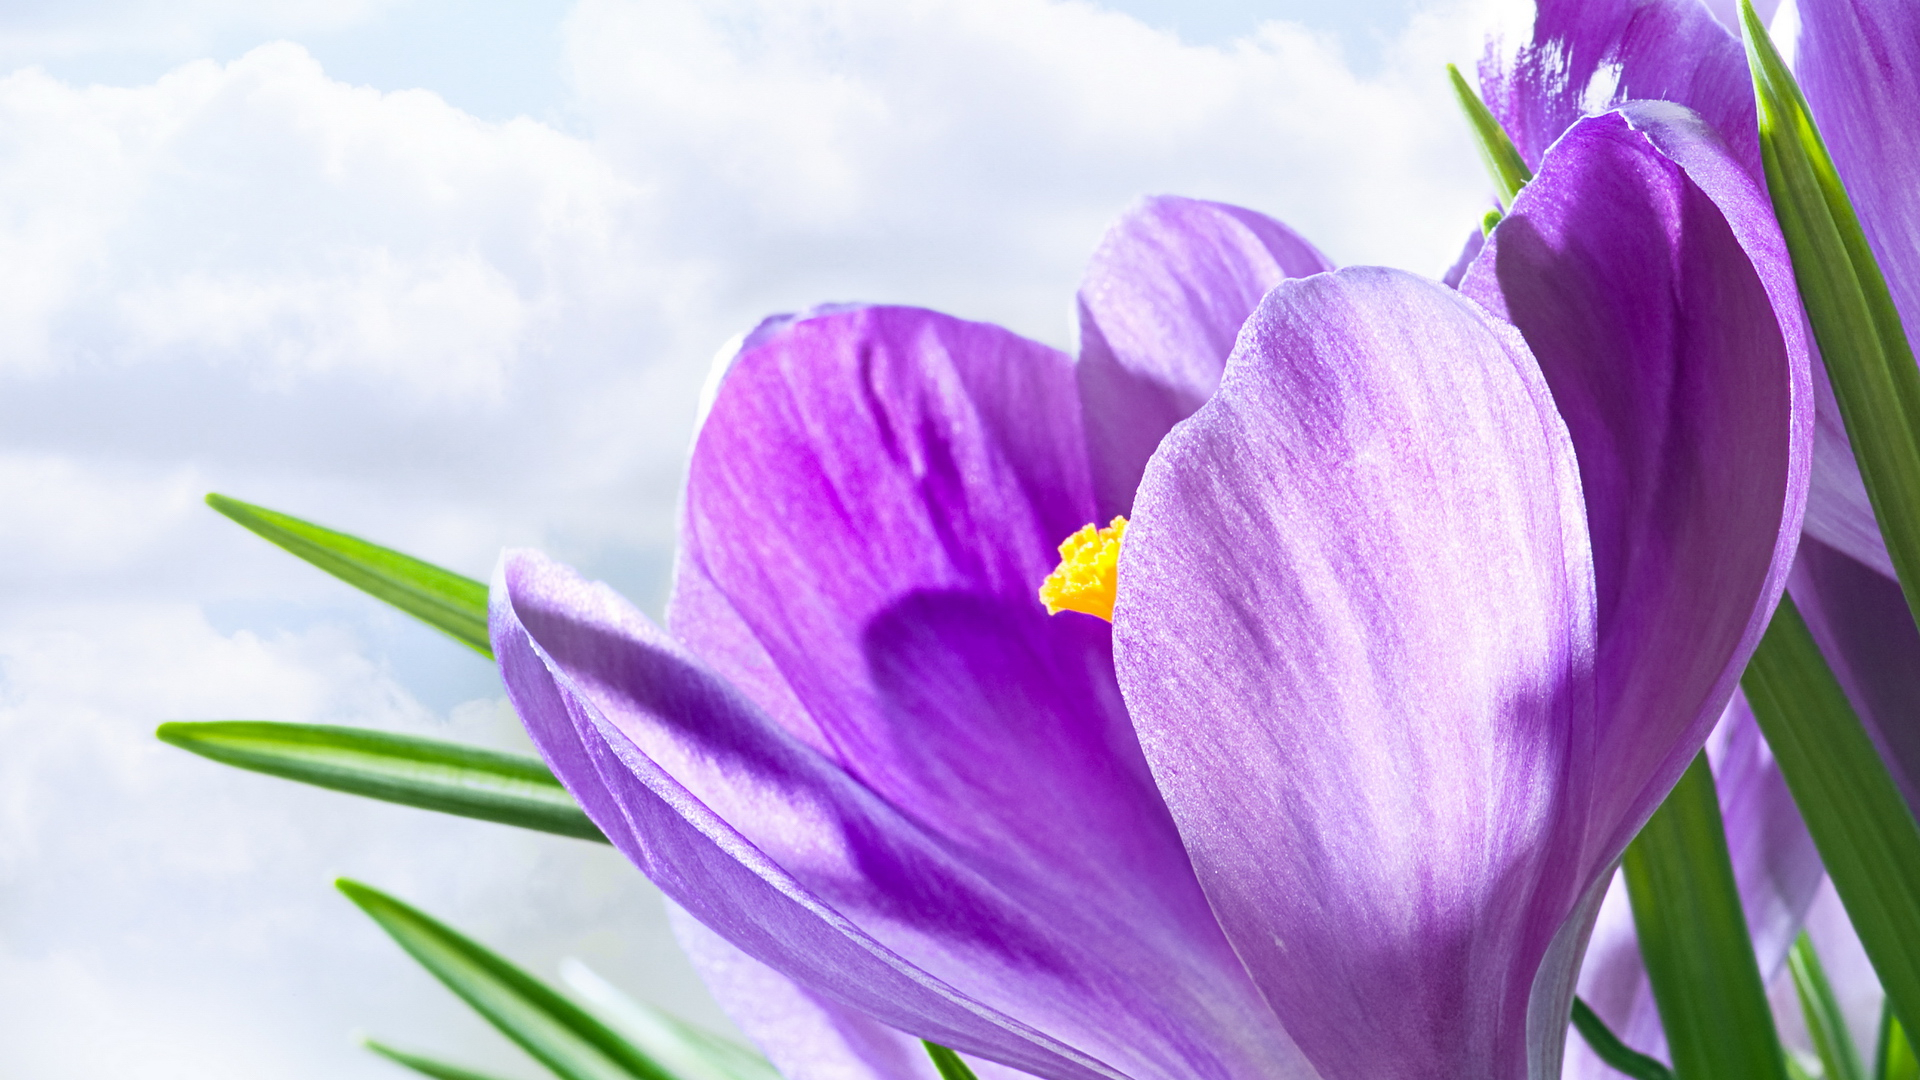 hd flower wallpapers 1080p,flower,flowering plant,petal,violet,purple